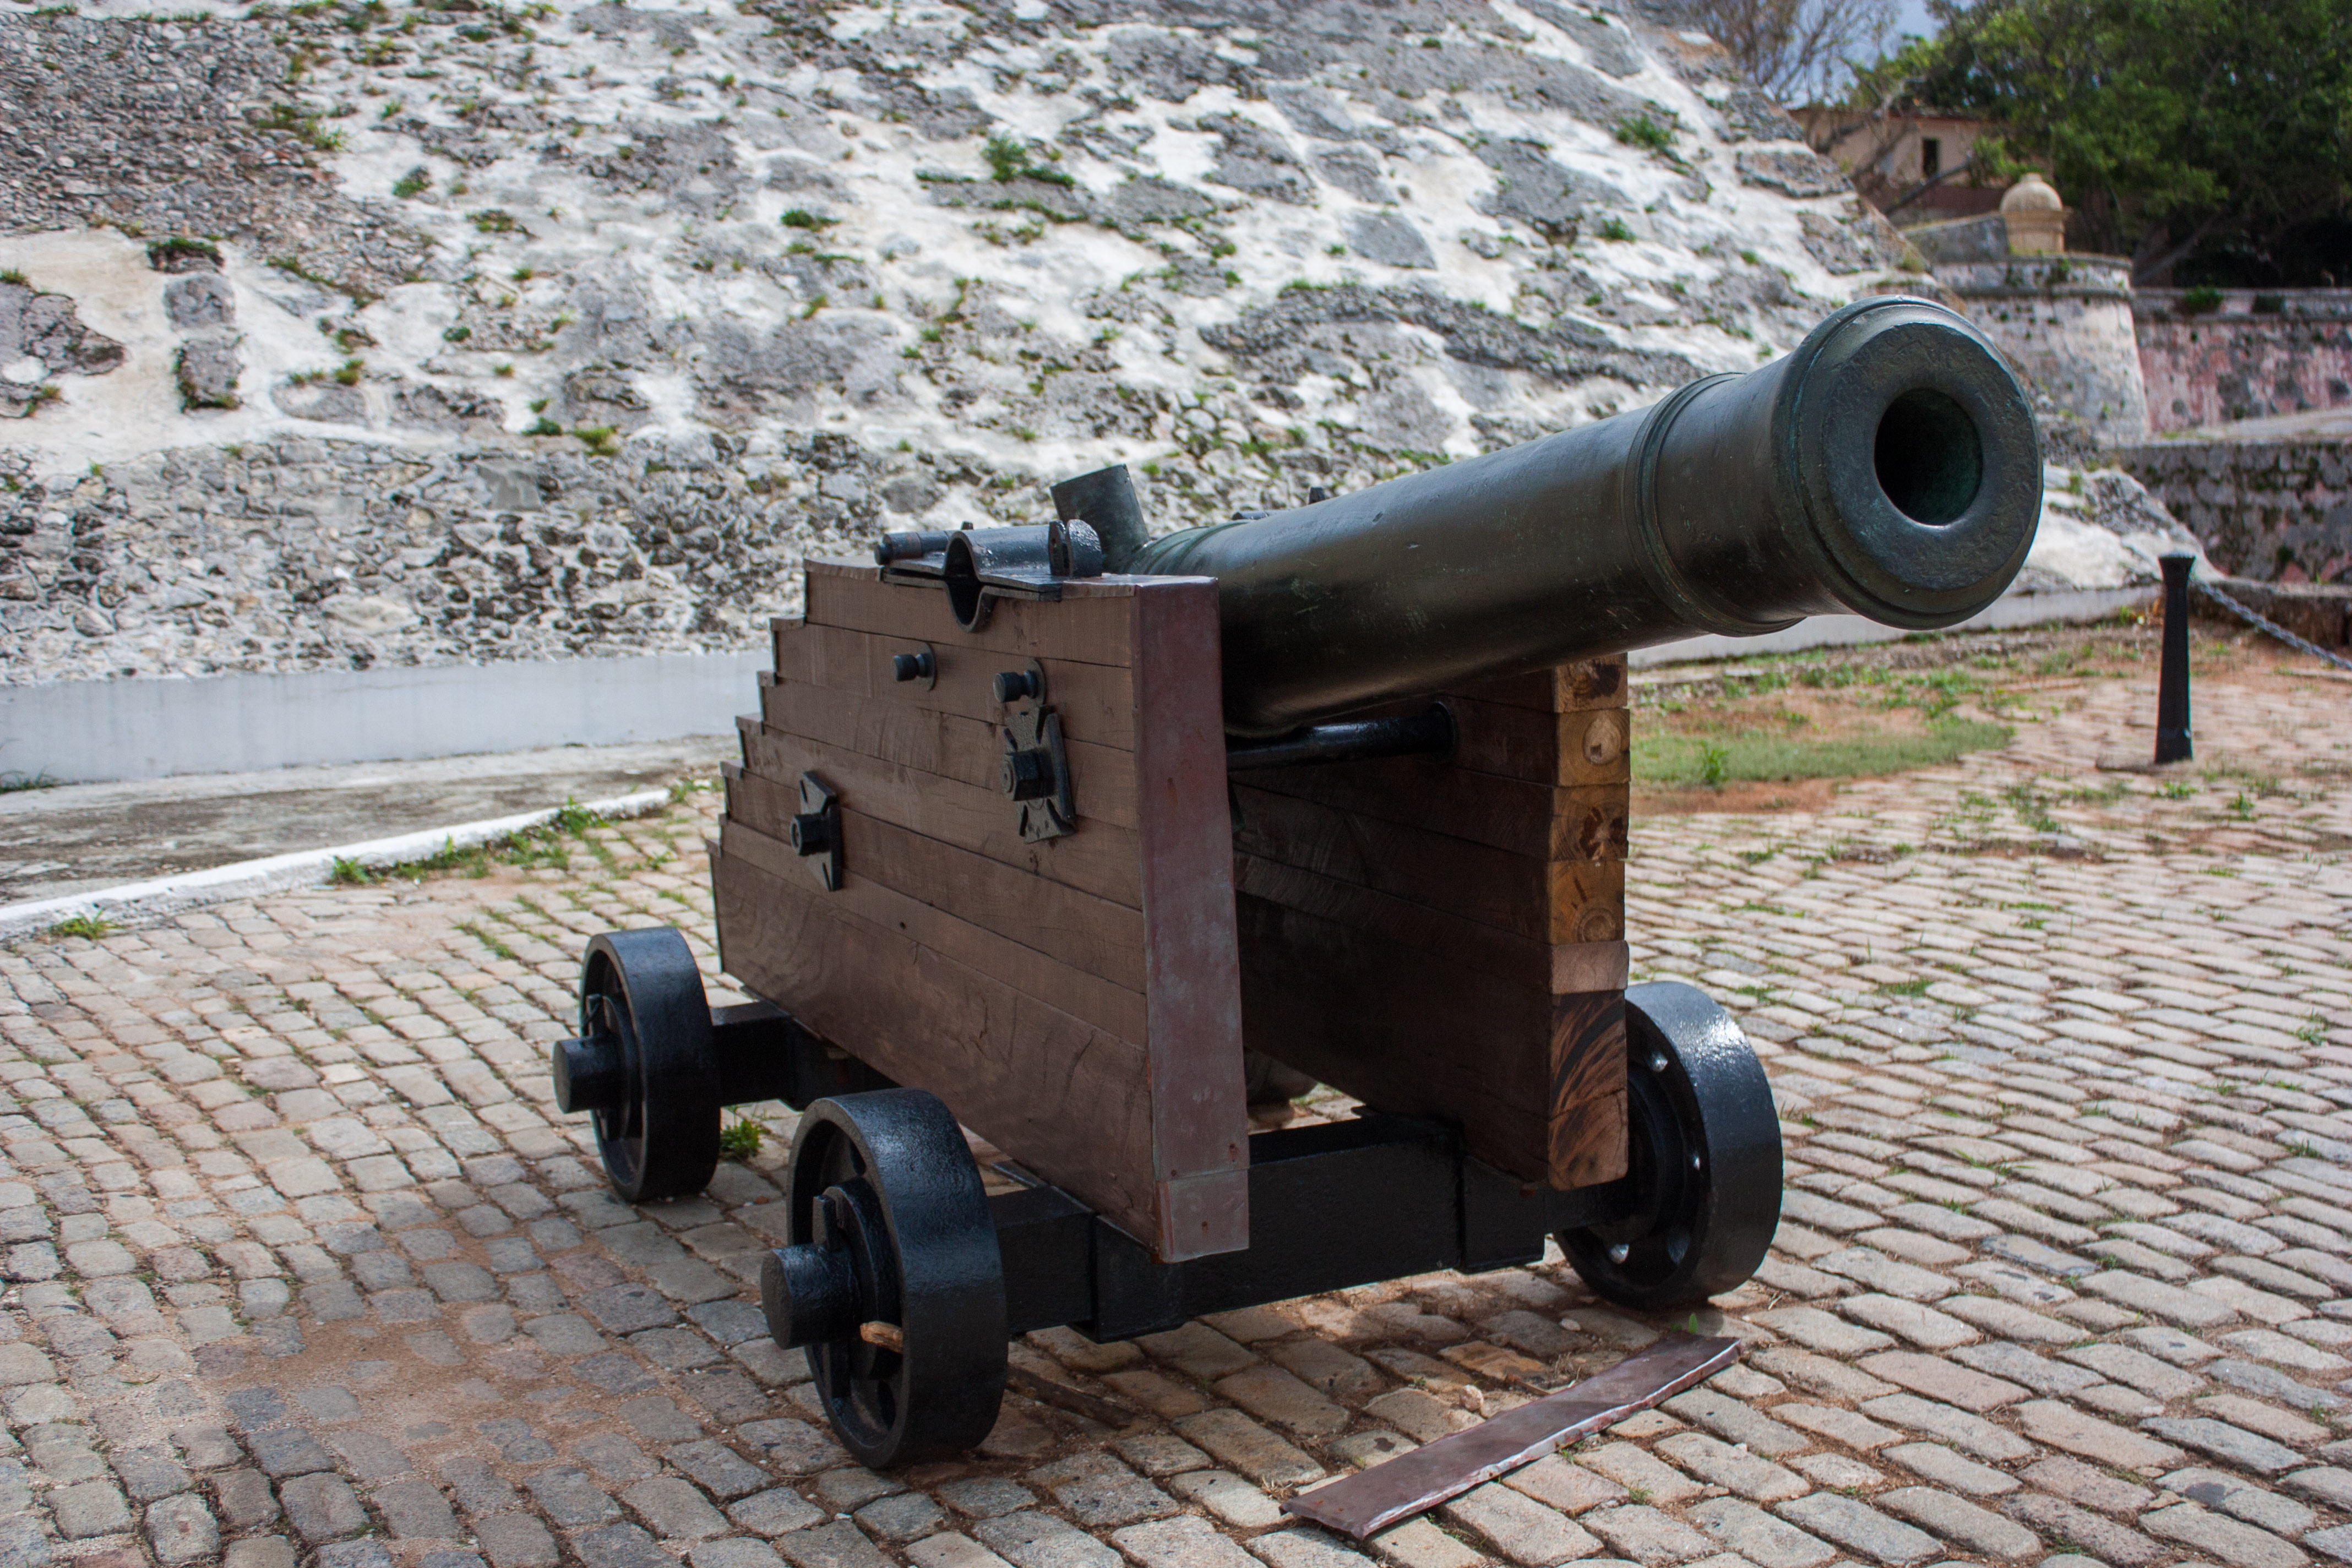 A cannon at San Carlos de la Cabana